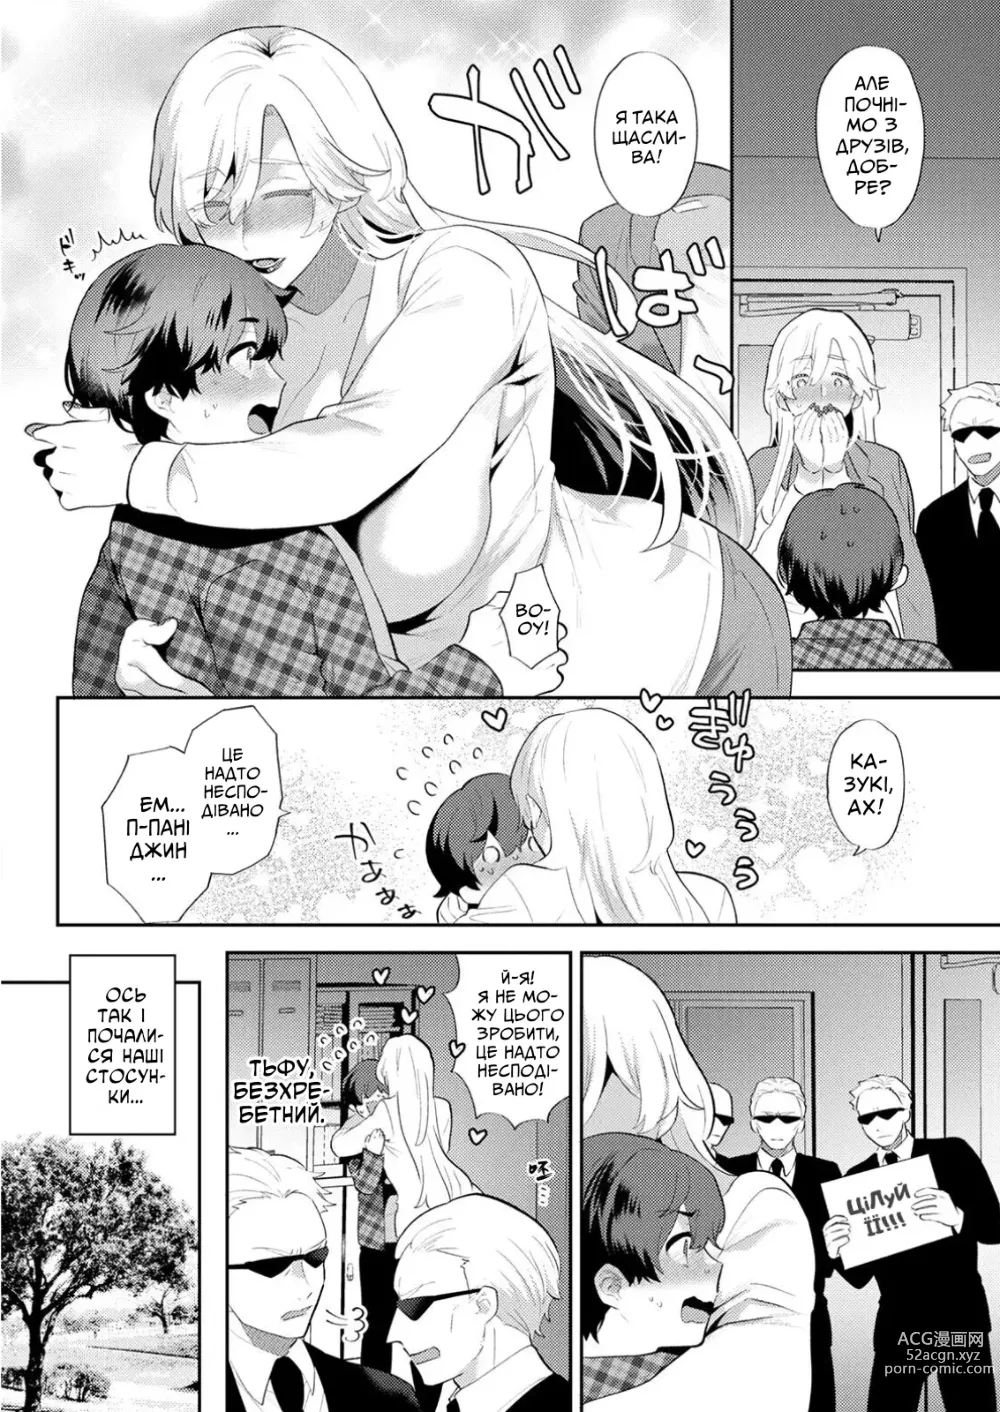 Page 6 of manga [Моґікі Хаямі] Я звичайний студент коледжу, але бос мафії шалено в мене закохана!!!